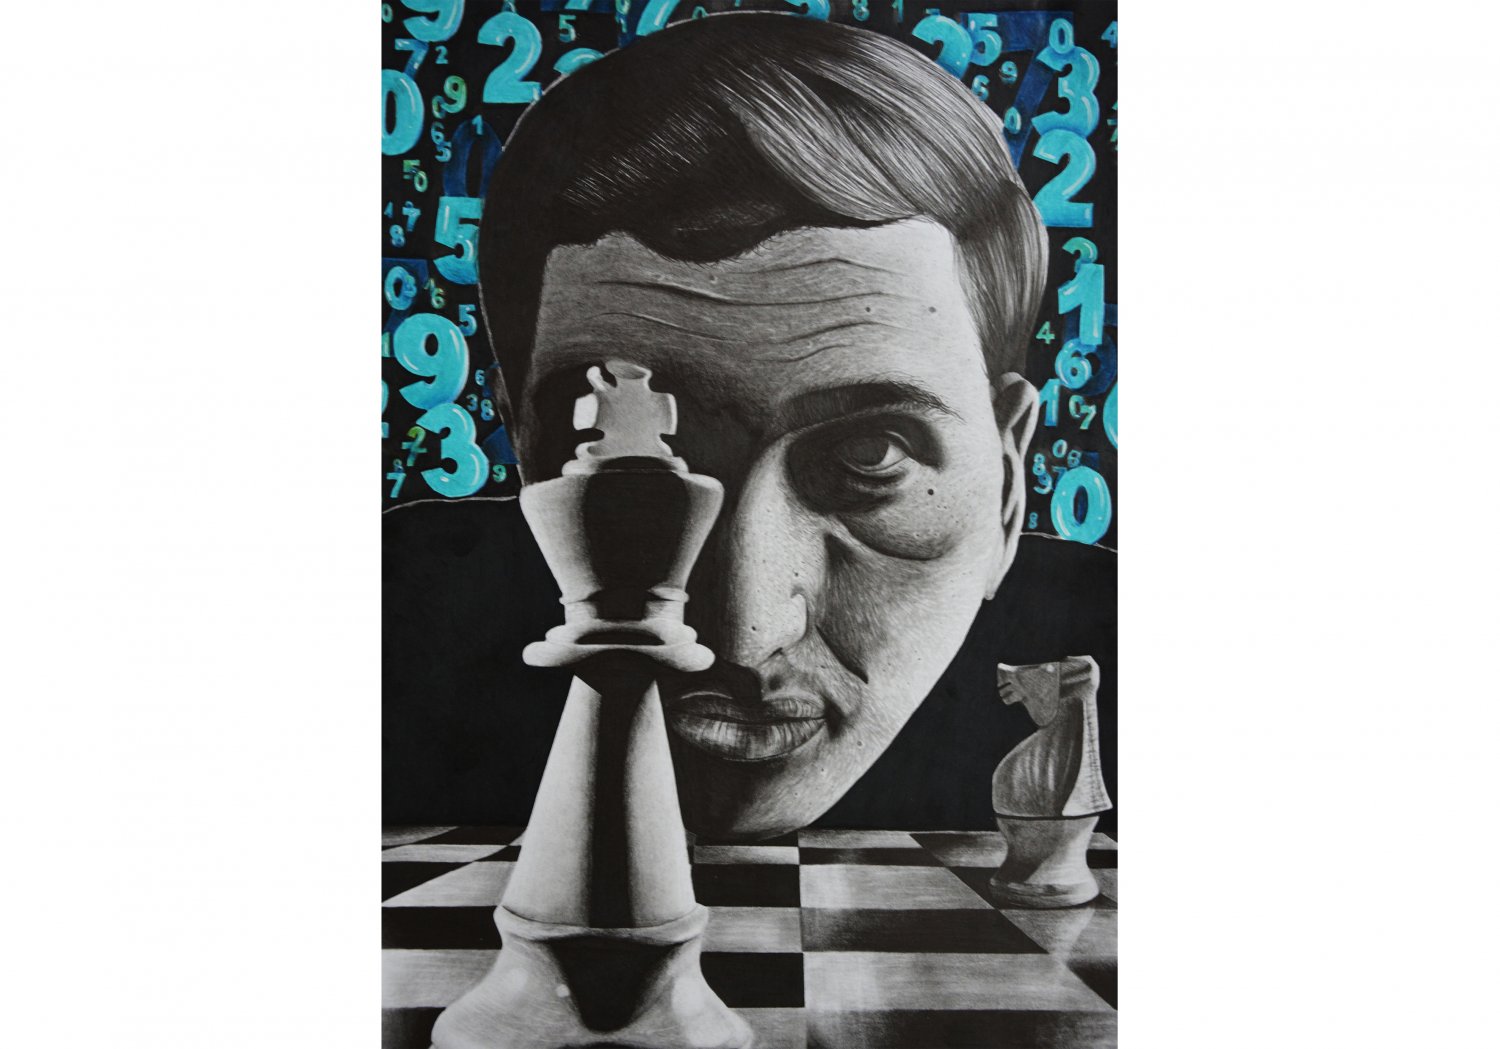 Wyróżnienie (Szkoła ponadpodstawowa) Róża Stolarczyk. Tytuł "Myśl analityczna". Praca przedstawia figurę szachową oraz twarz na której widać emocje skupienia niczym gracz podczas gry w szachy. Portret narysowany ołówkiem z dbałością o każdy detal.